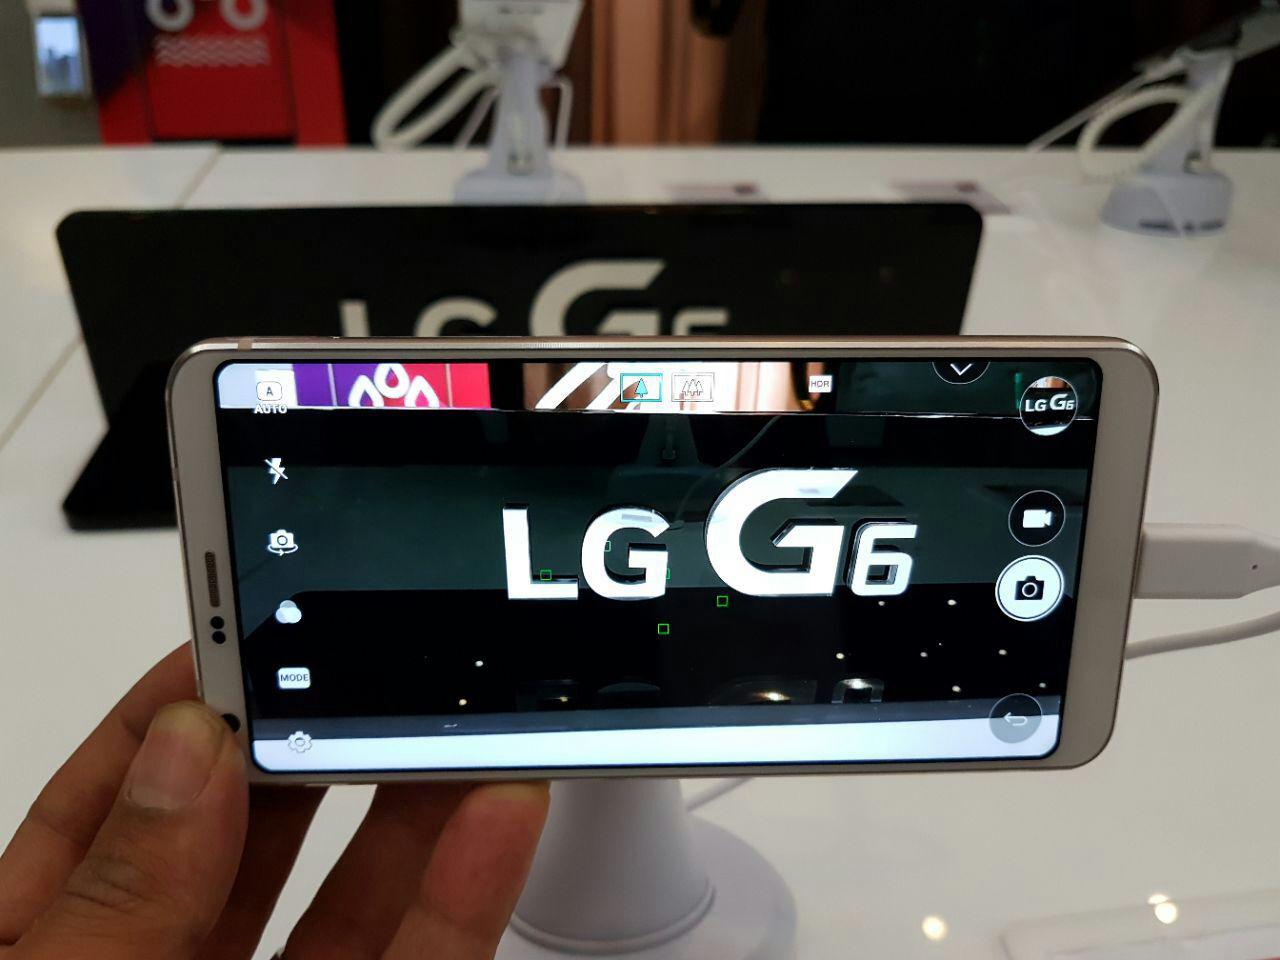 ال جی G6 موبایل پرچمدار جدید شرکت ال جی رسمی و با قمیتی بالا معرفی و وارد بازار ایران شده است. ال جی G6 یک تلفن بالارده و محصول برتر این شرکت محسوب می‌شود.